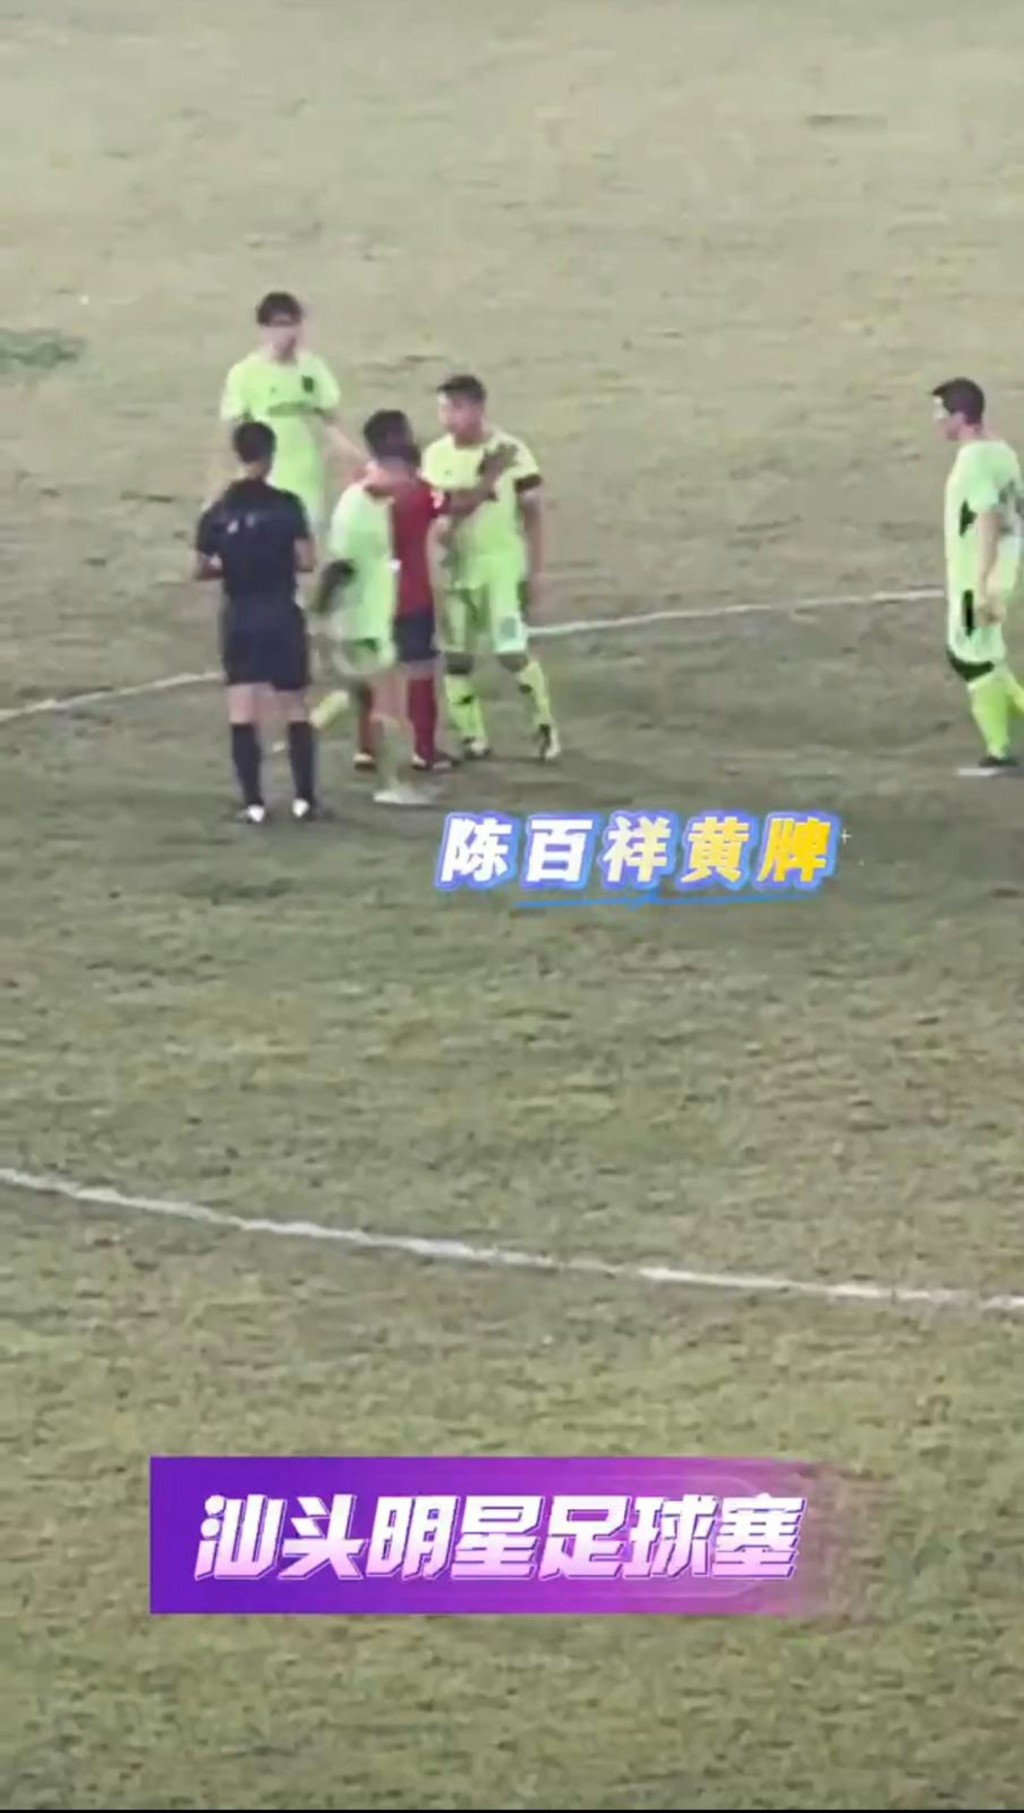 幸得隊友拉開才沒有進一步衝突，最終陳百祥獨個步離球場。